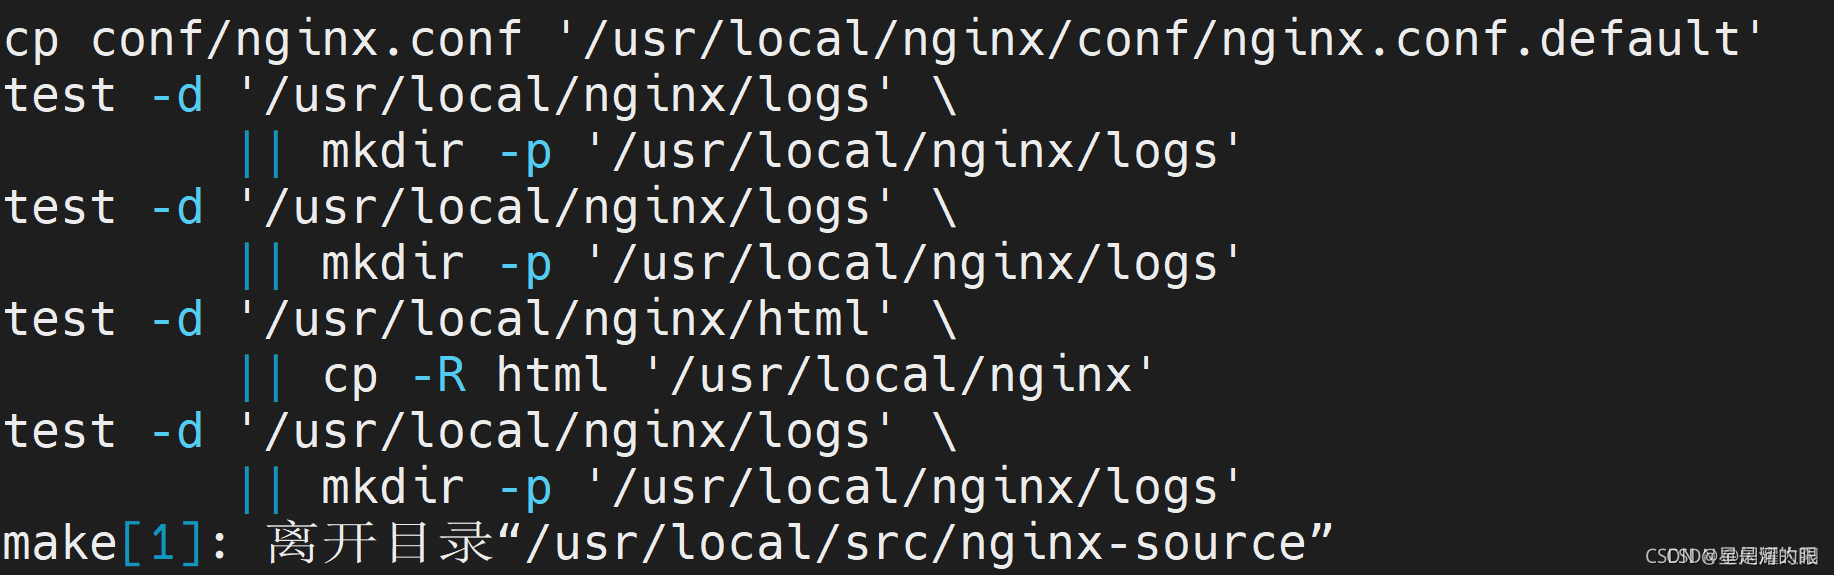 完整项目学习-10项目发布即在linux系统中完成部署